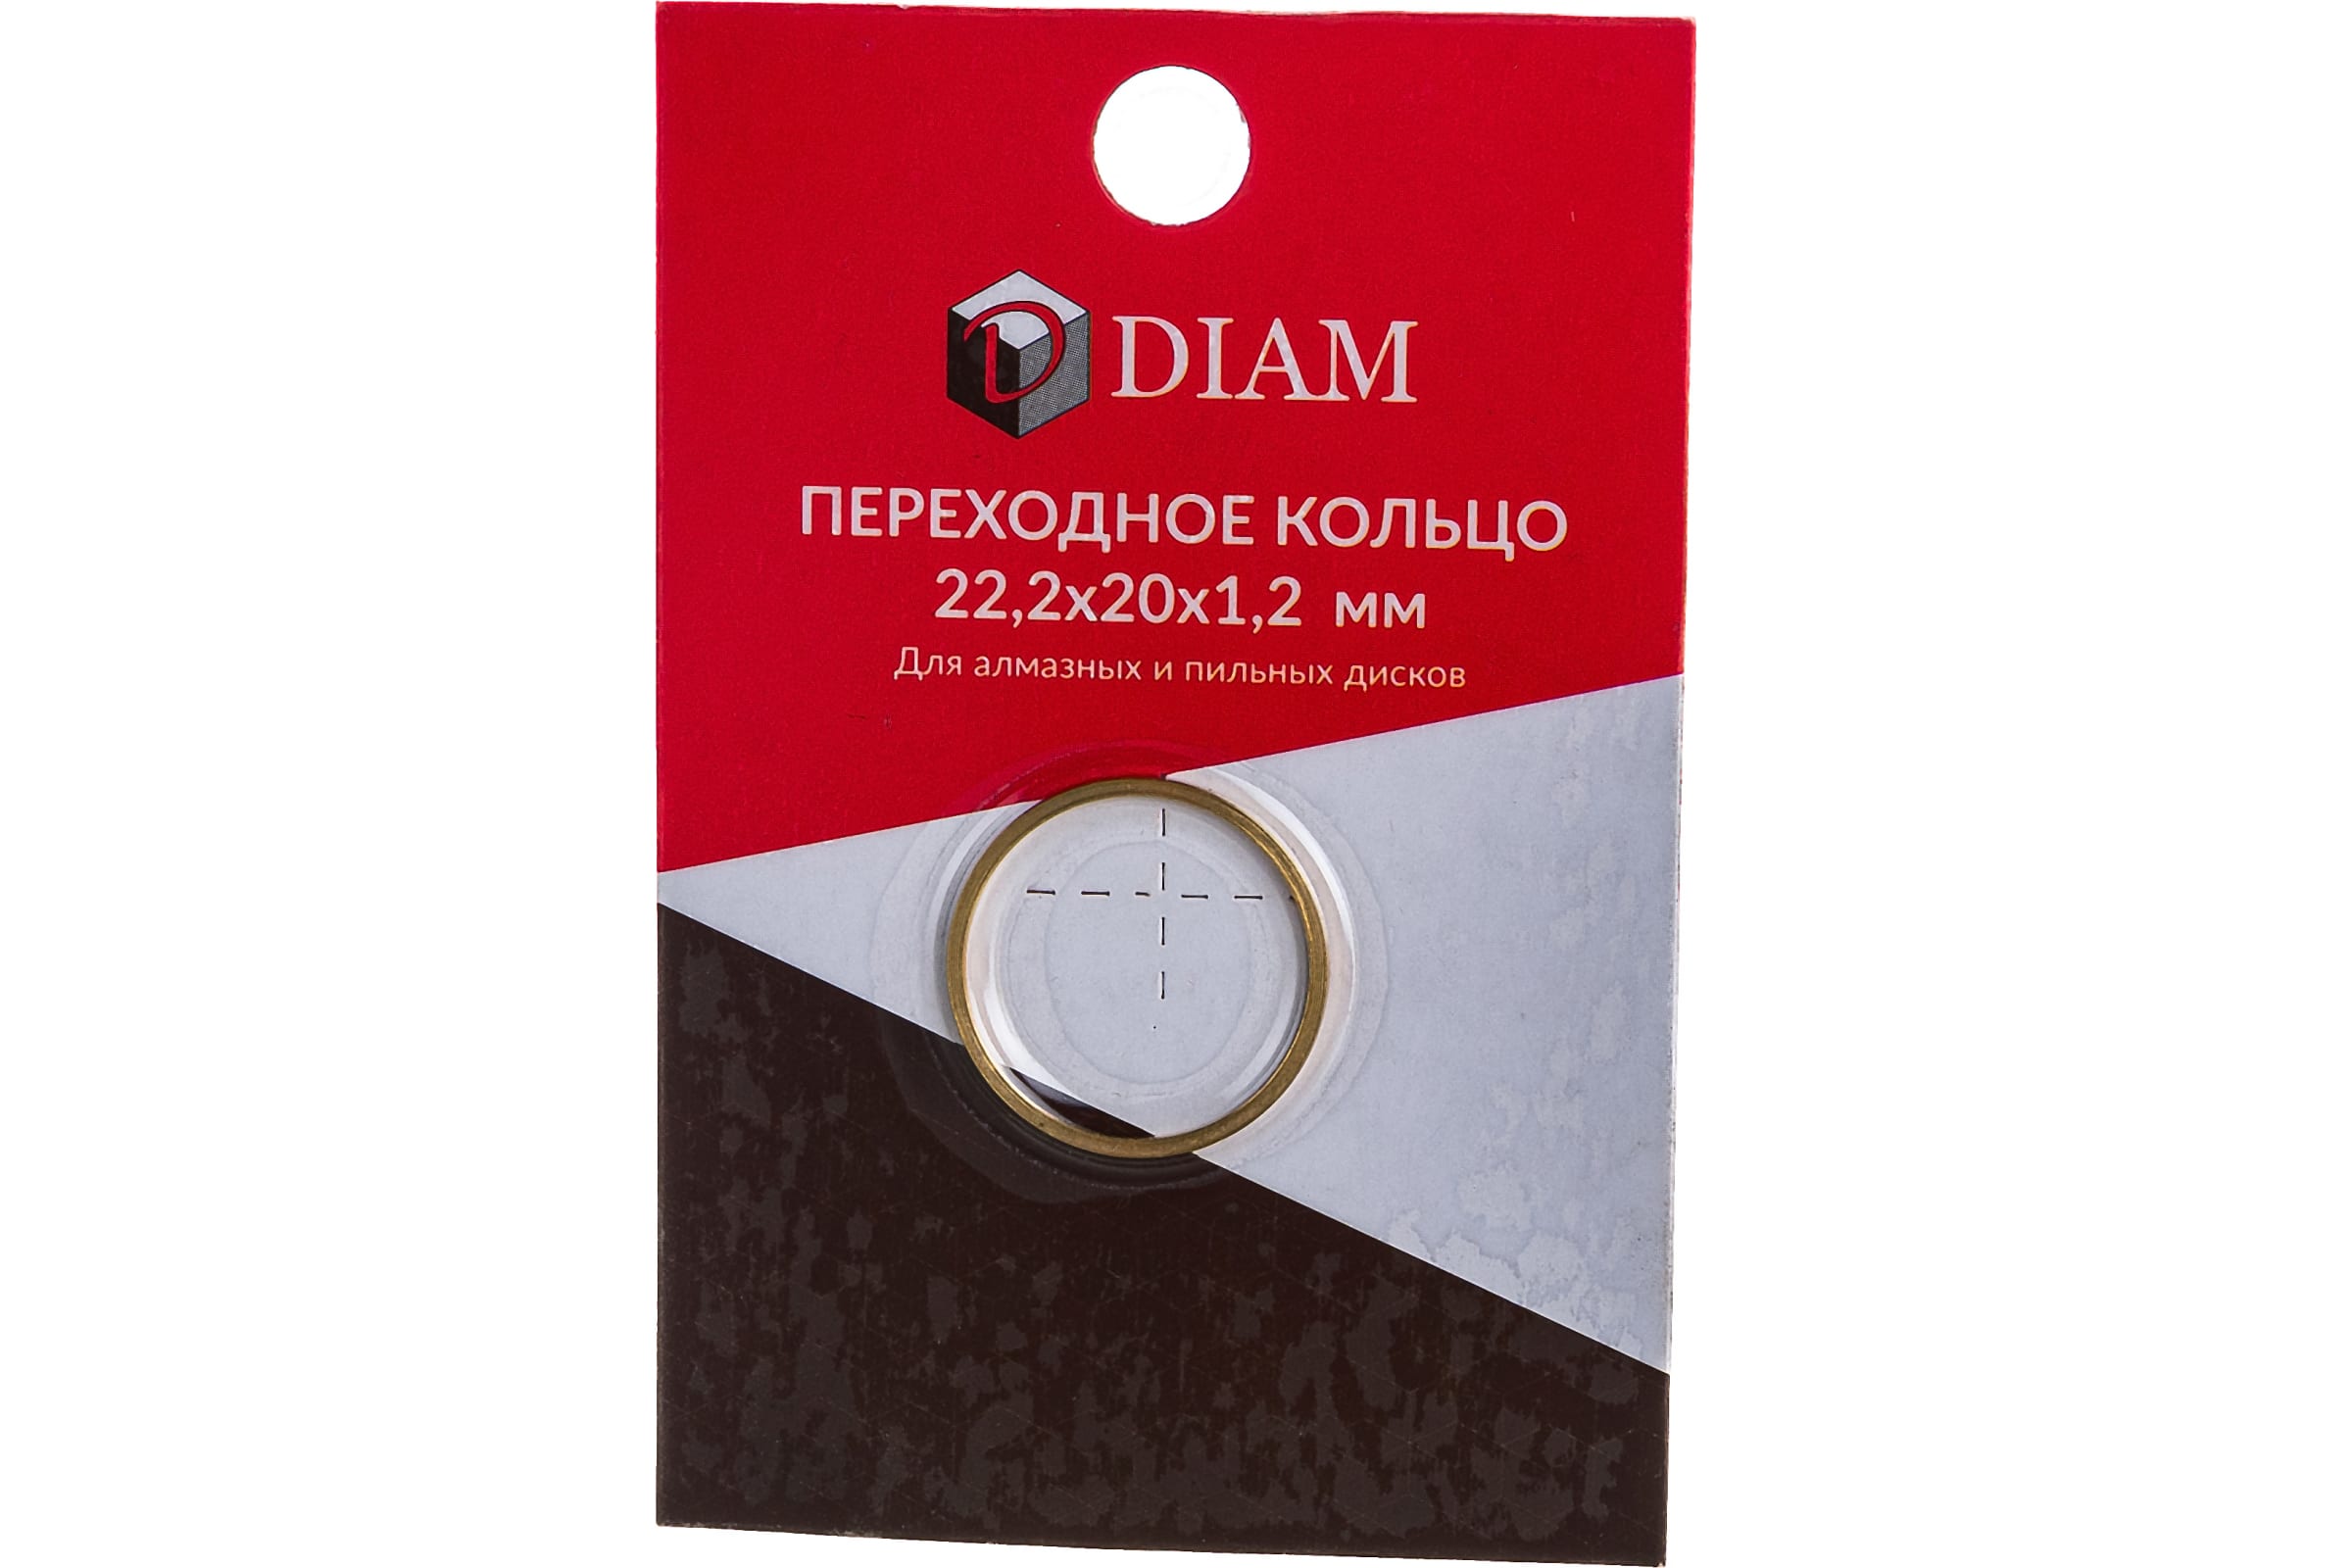 DIAM Переходное кольцо 22,2х20х1,2 640082 переходное кольцо для коробки скрытой проводки d70x72мм tdm